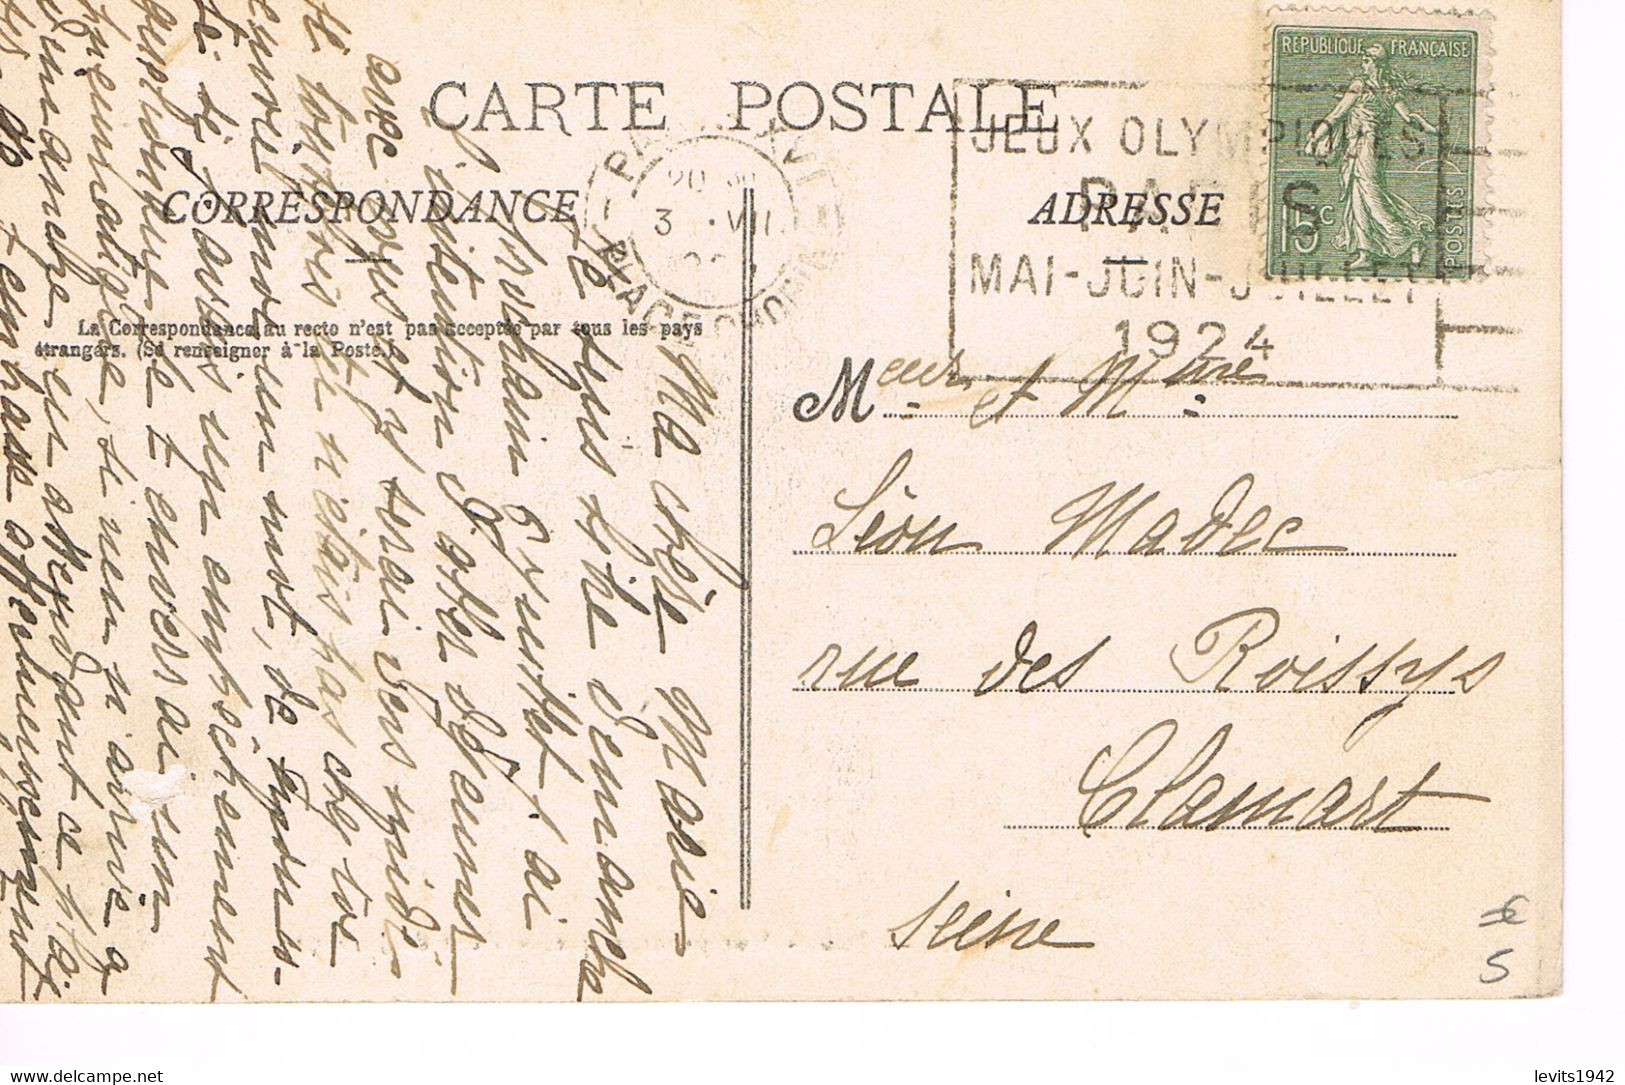 JEUX OLYMPIQUES 1924 -  MARQUE POSTALE - ESCRIME - TIR DE CHASSE - POLO - JOUR DE COMPETITION - 03-07 - - Estate 1924: Paris